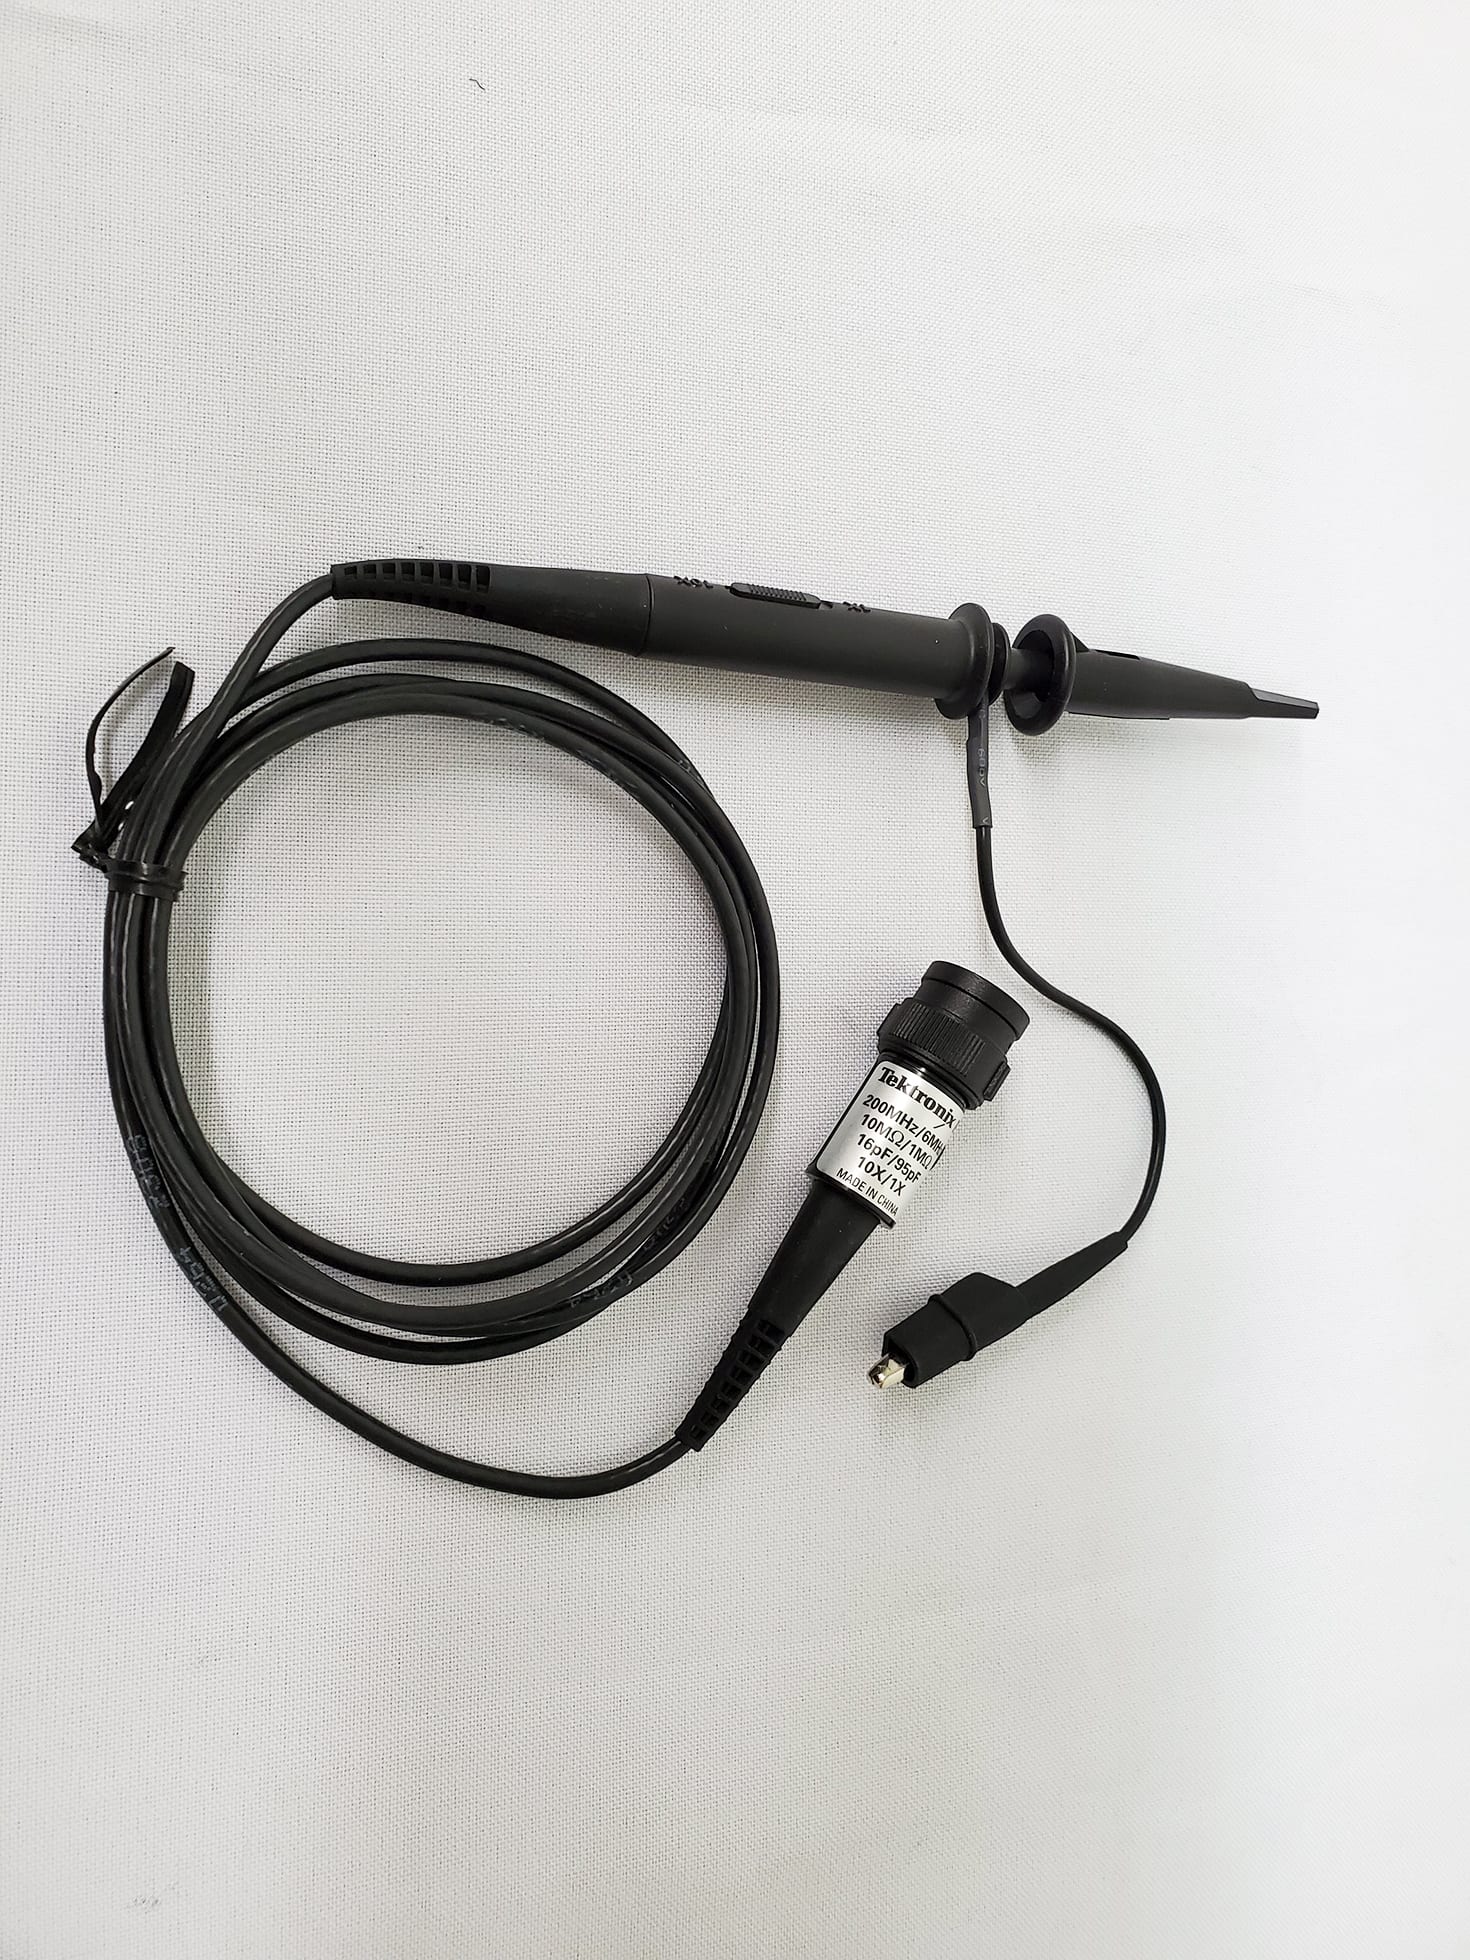 Tektronix-P 2221-Passive Probe for Oscilloscope-58230 For Sale